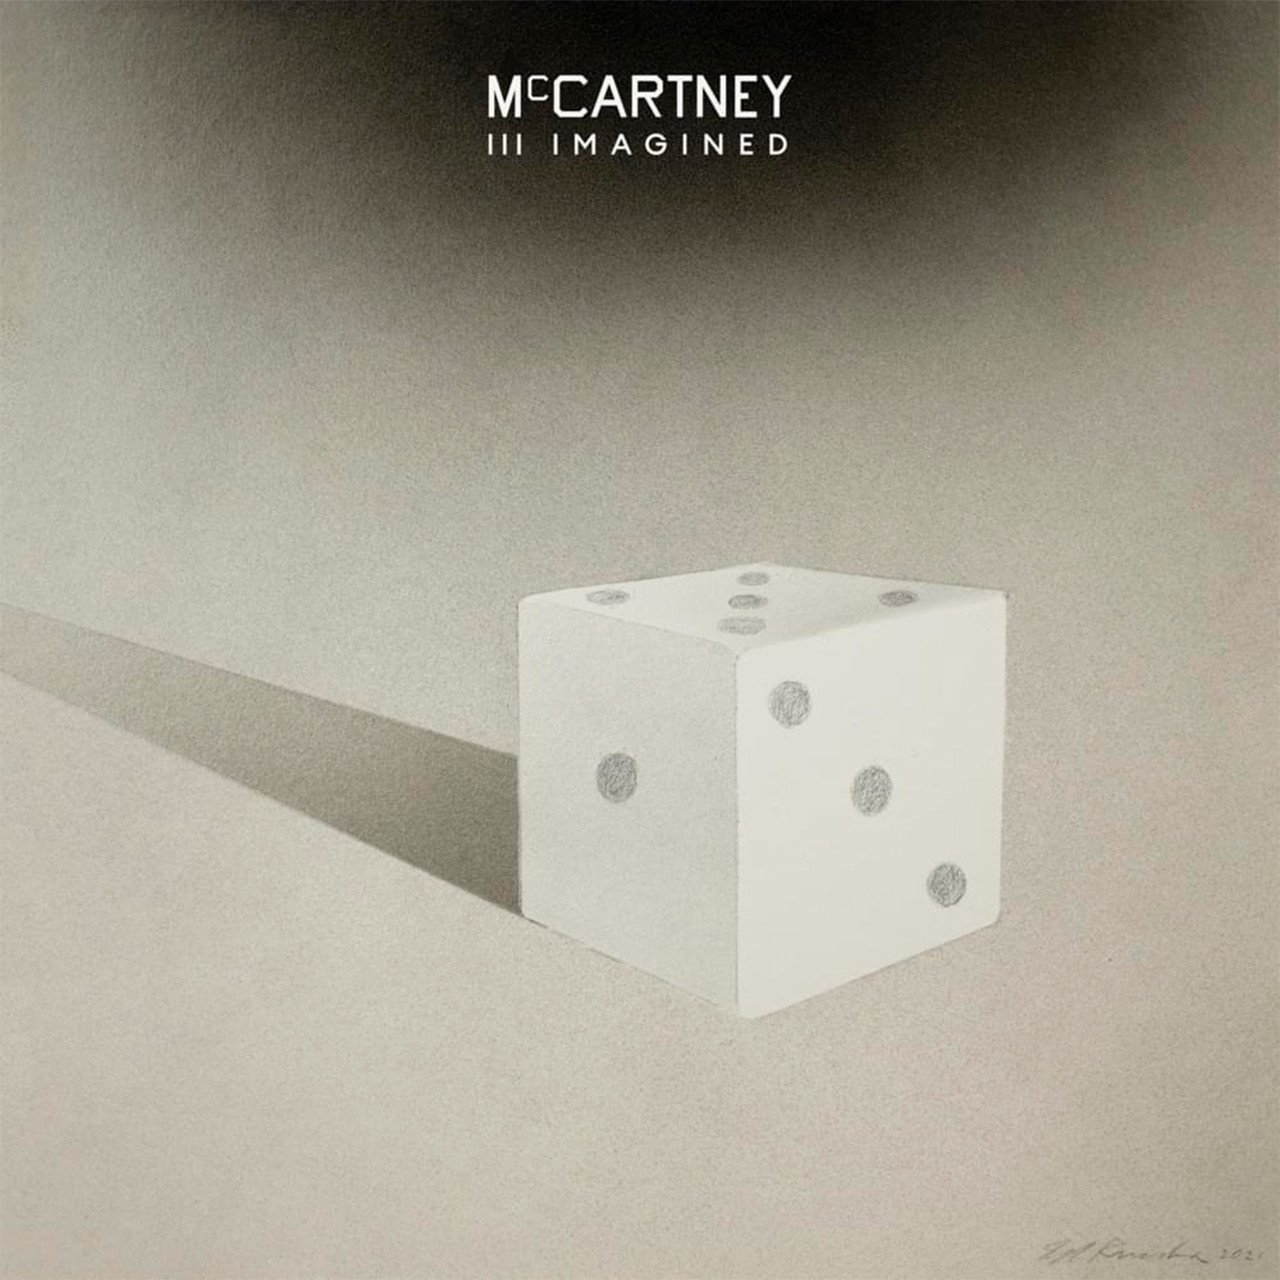 Рок Capitol US Paul McCartney - McCartney III Imagined одиссея капитана блада региональное издание